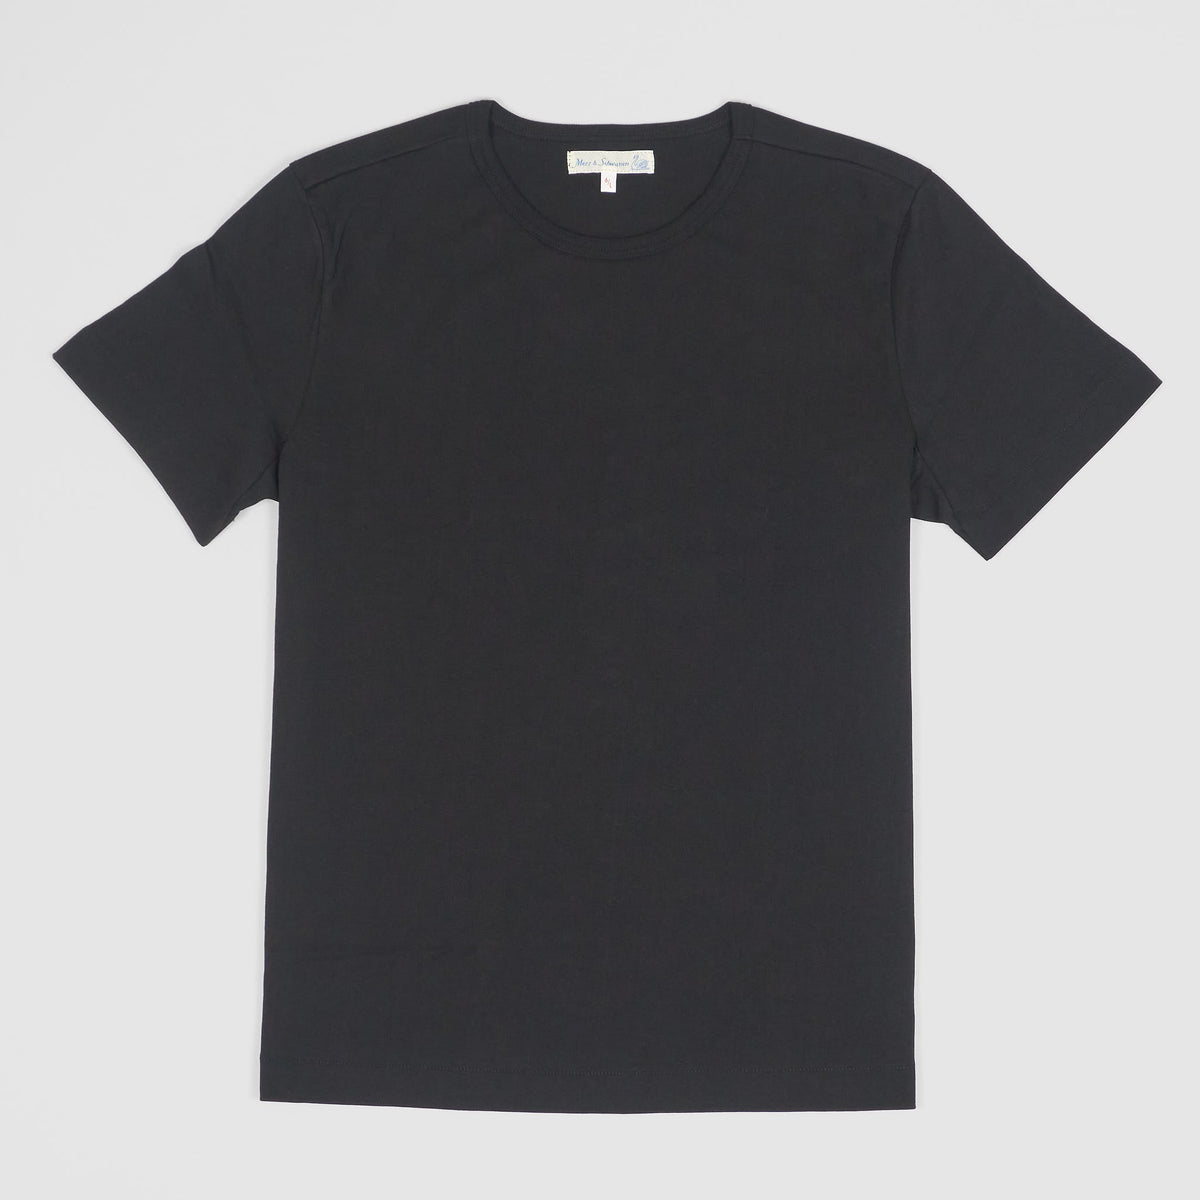 Merz b.Schwanen Soft Organic Cotton Loop Wheeler Short Sleeves T-Shirt Black